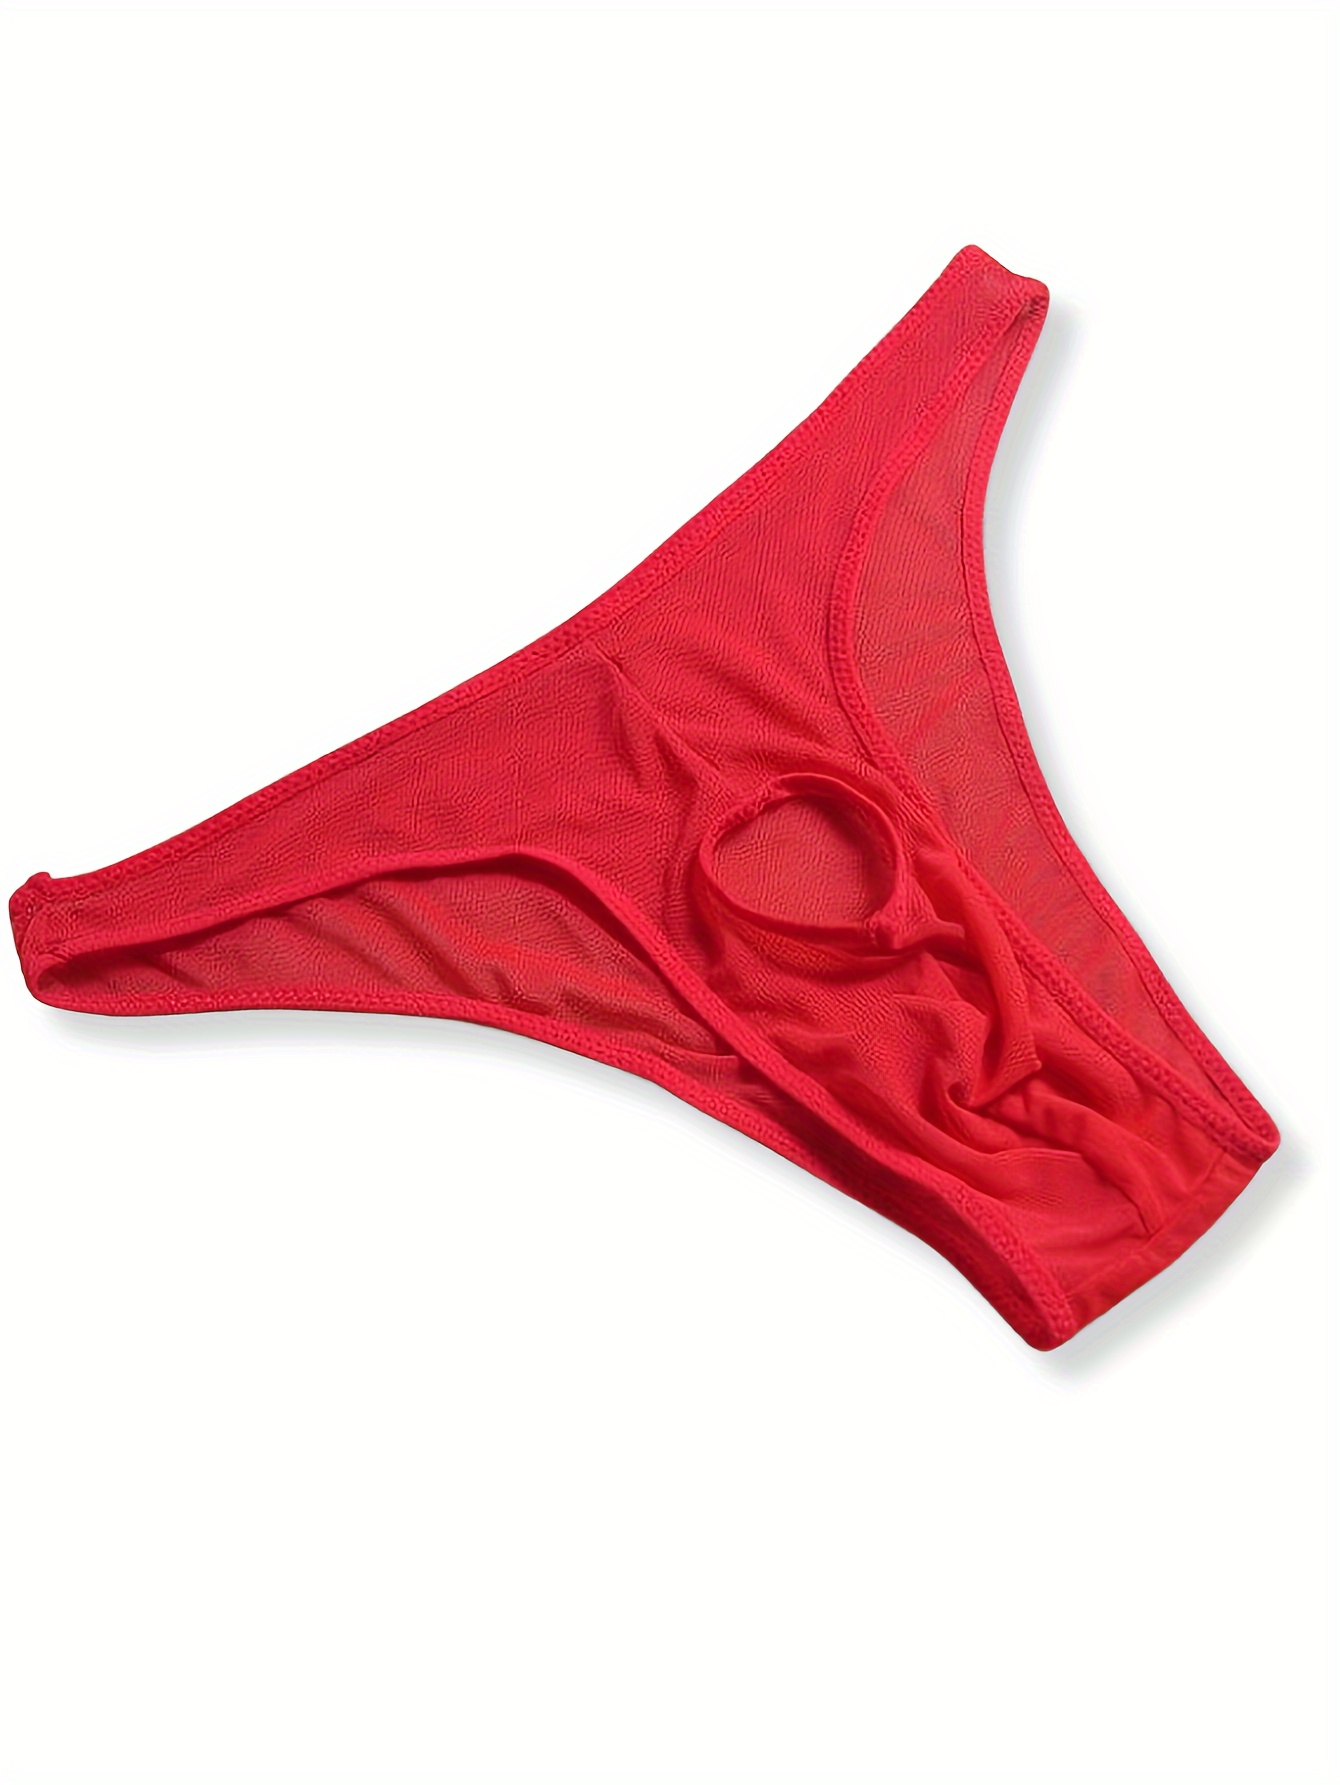 Men's Mesh Lace Transparent Underwear Transparent Air Low Waist Briefs